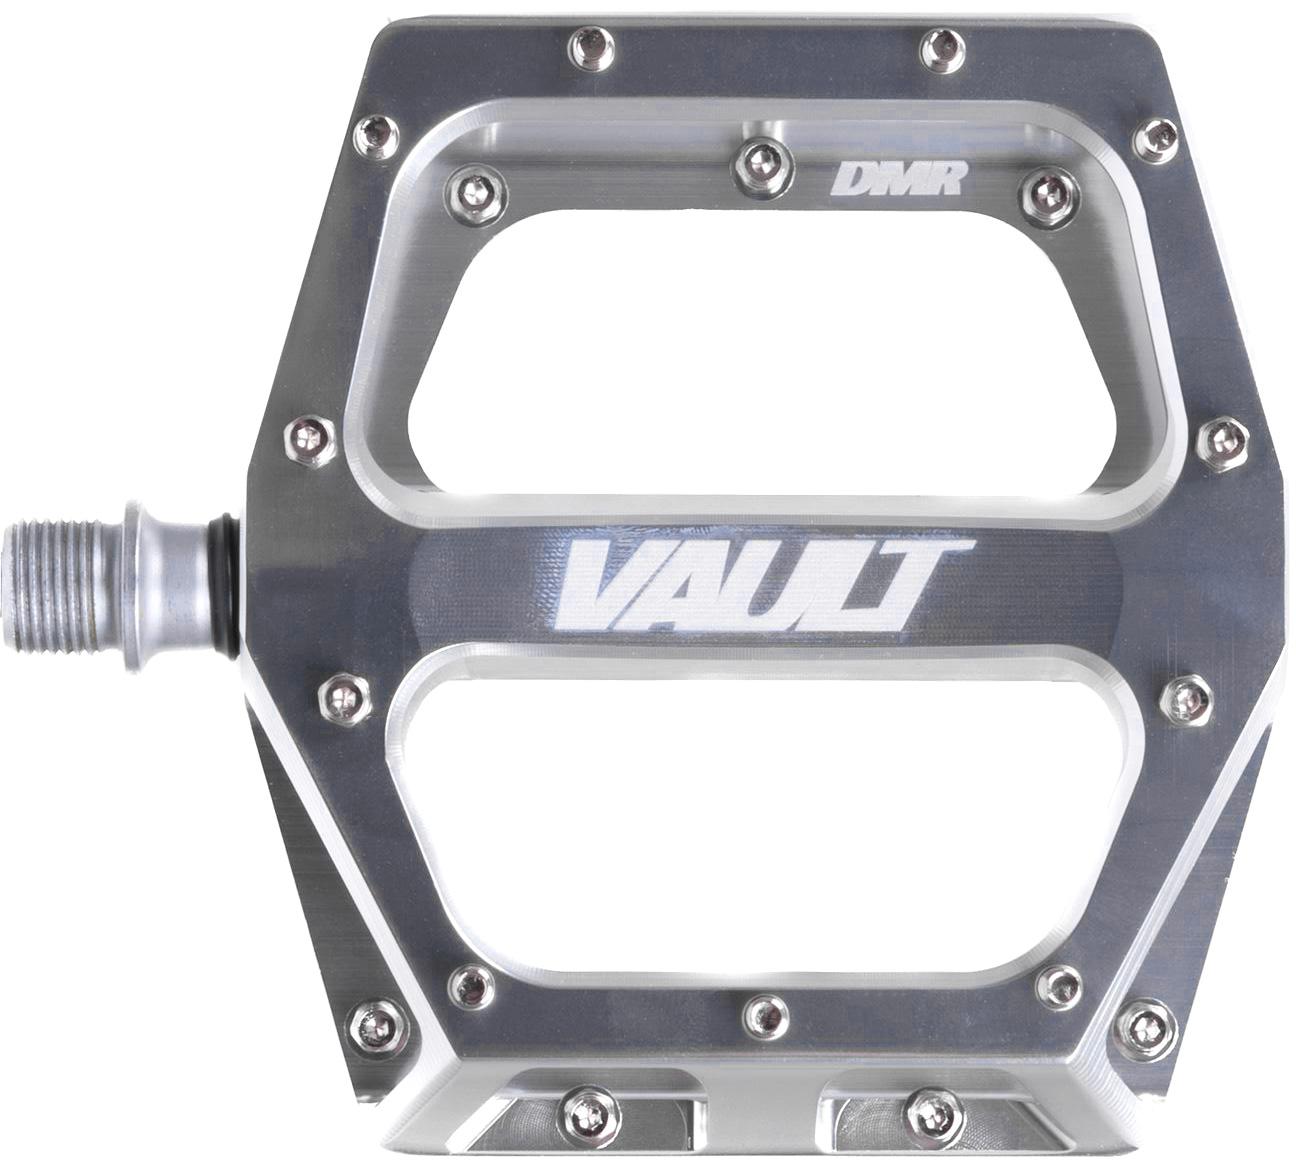 Dmr Vault V2 Pedals - Silver